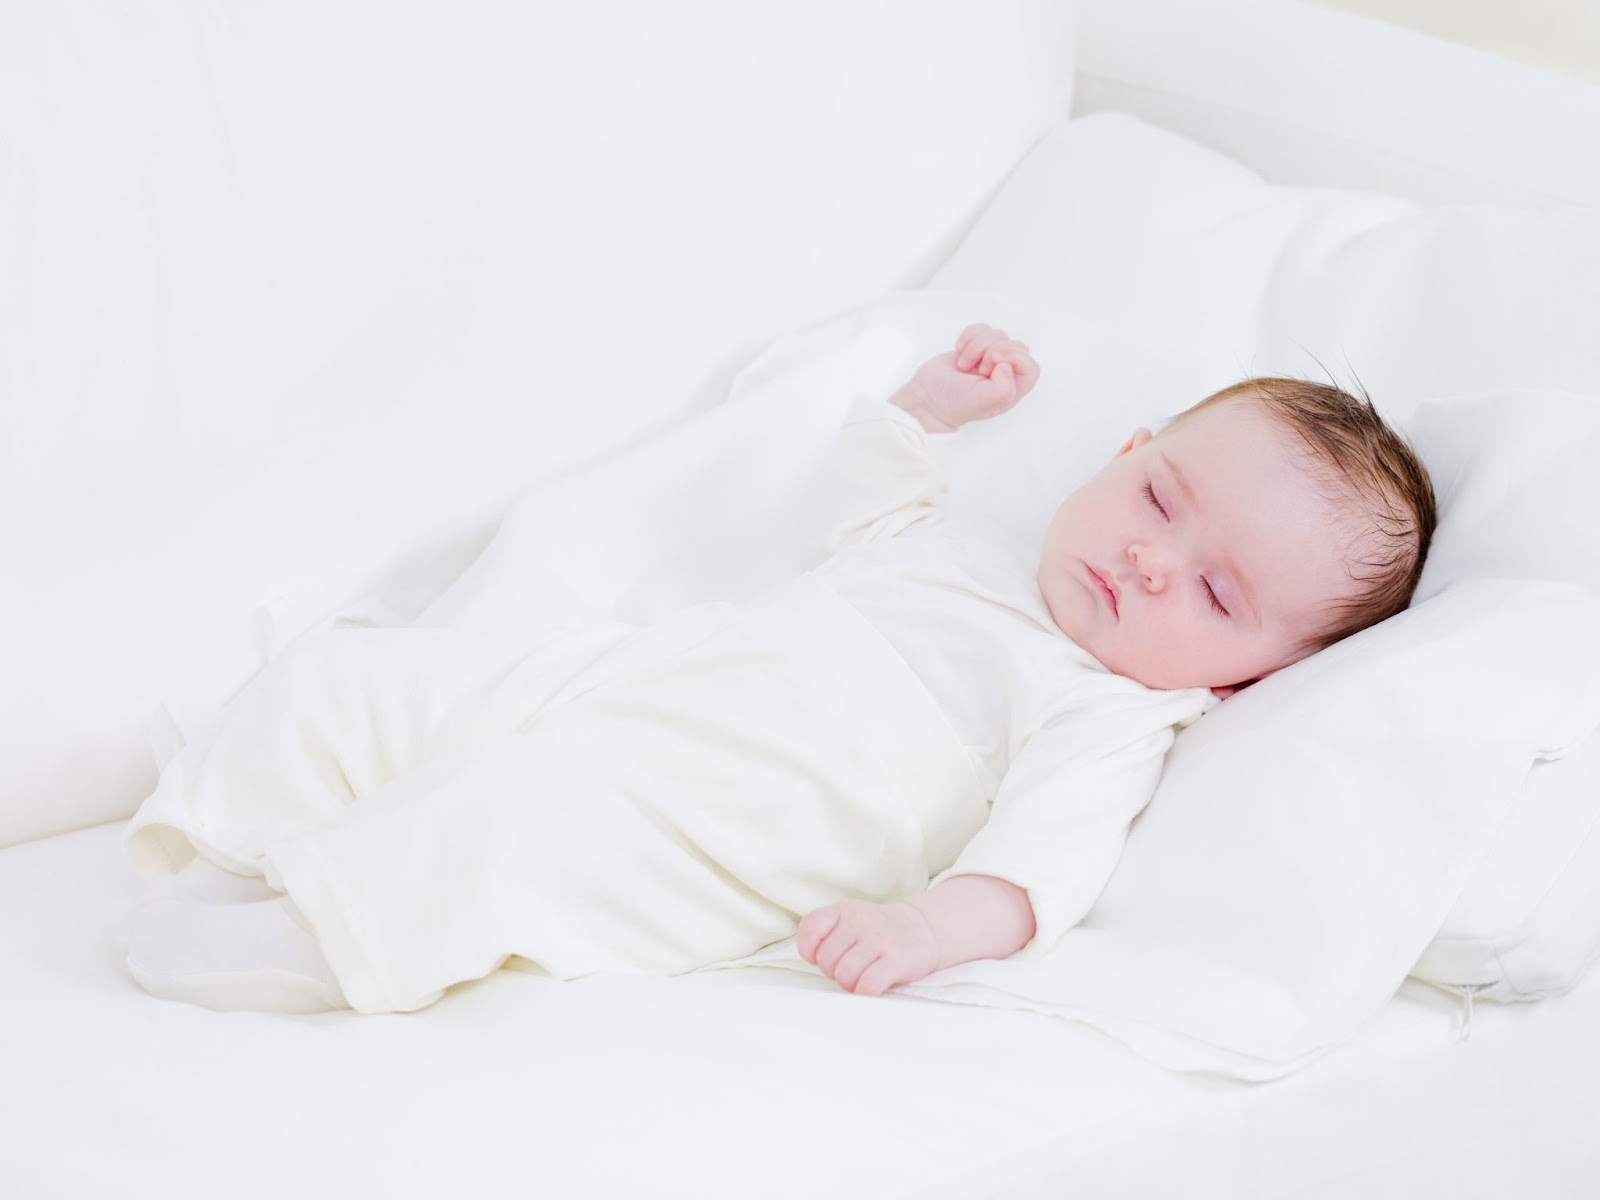 Kê cao đầu khi ngủ giúp bé cảm thấy thông thoáng hơn, dễ chịu hơn